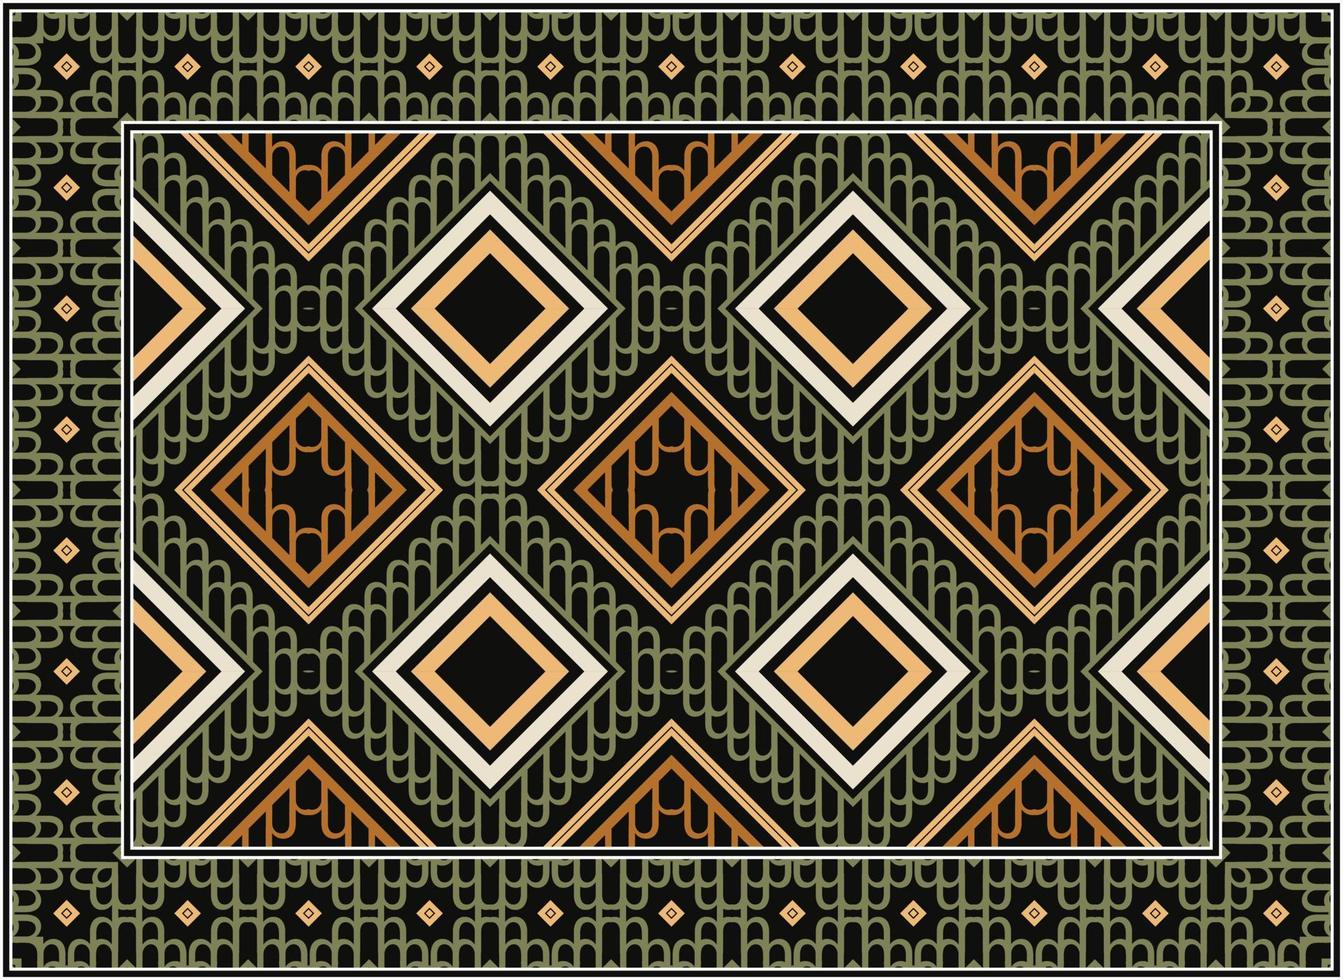 persisch Teppich modern Leben Zimmer, afrikanisch Motiv skandinavisch persisch Teppich modern afrikanisch ethnisch aztekisch Stil Design zum drucken Stoff Teppiche, Handtücher, Taschentücher, Schals Teppich, vektor